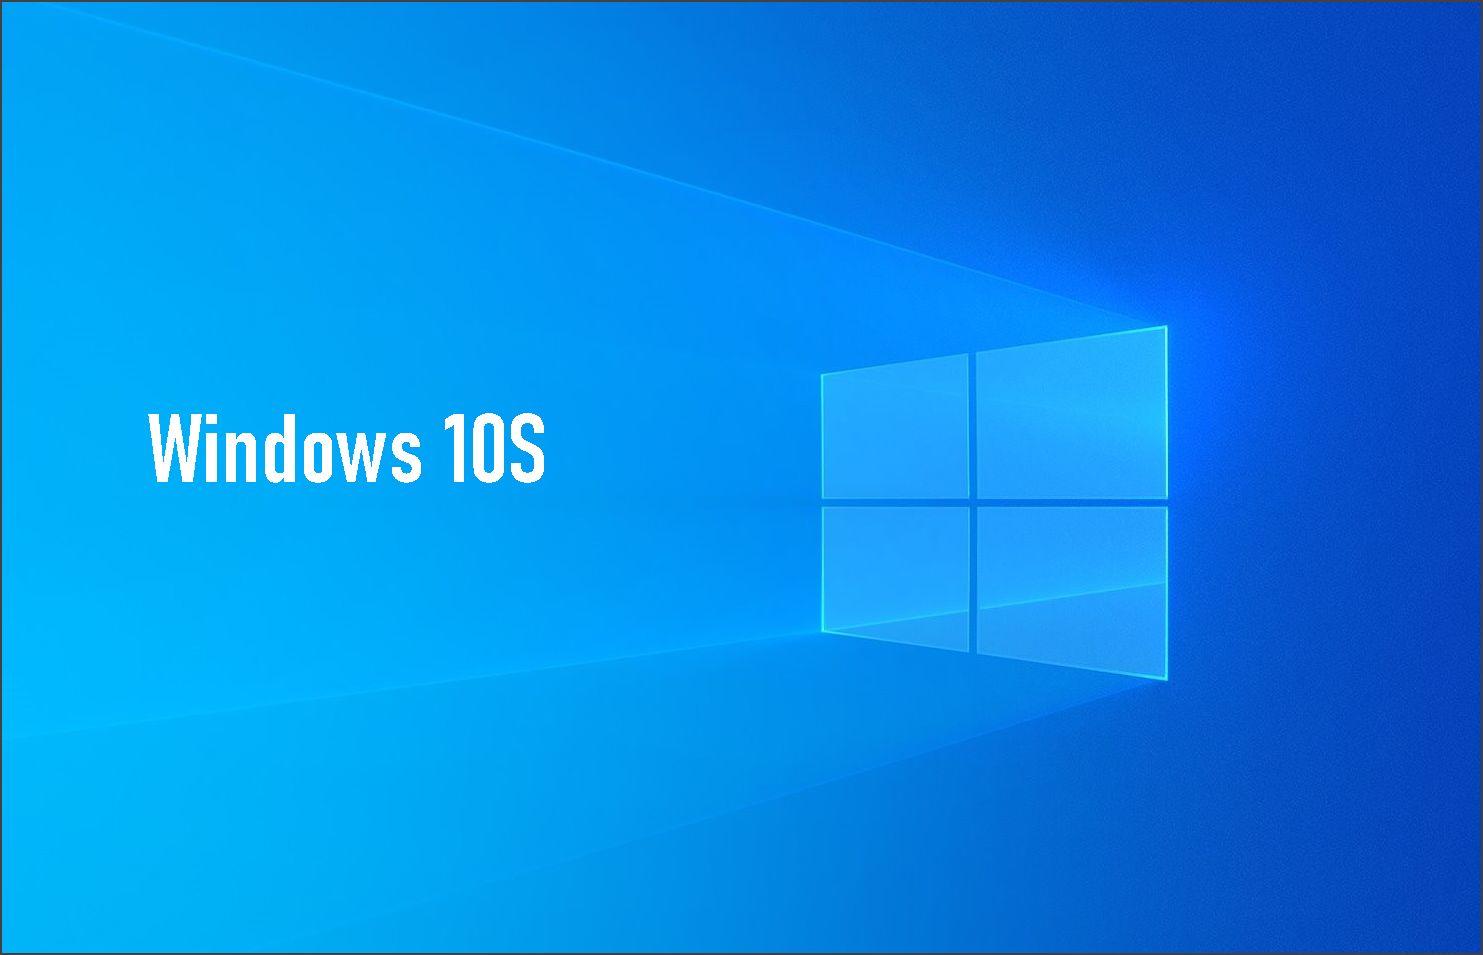 Windows 10S